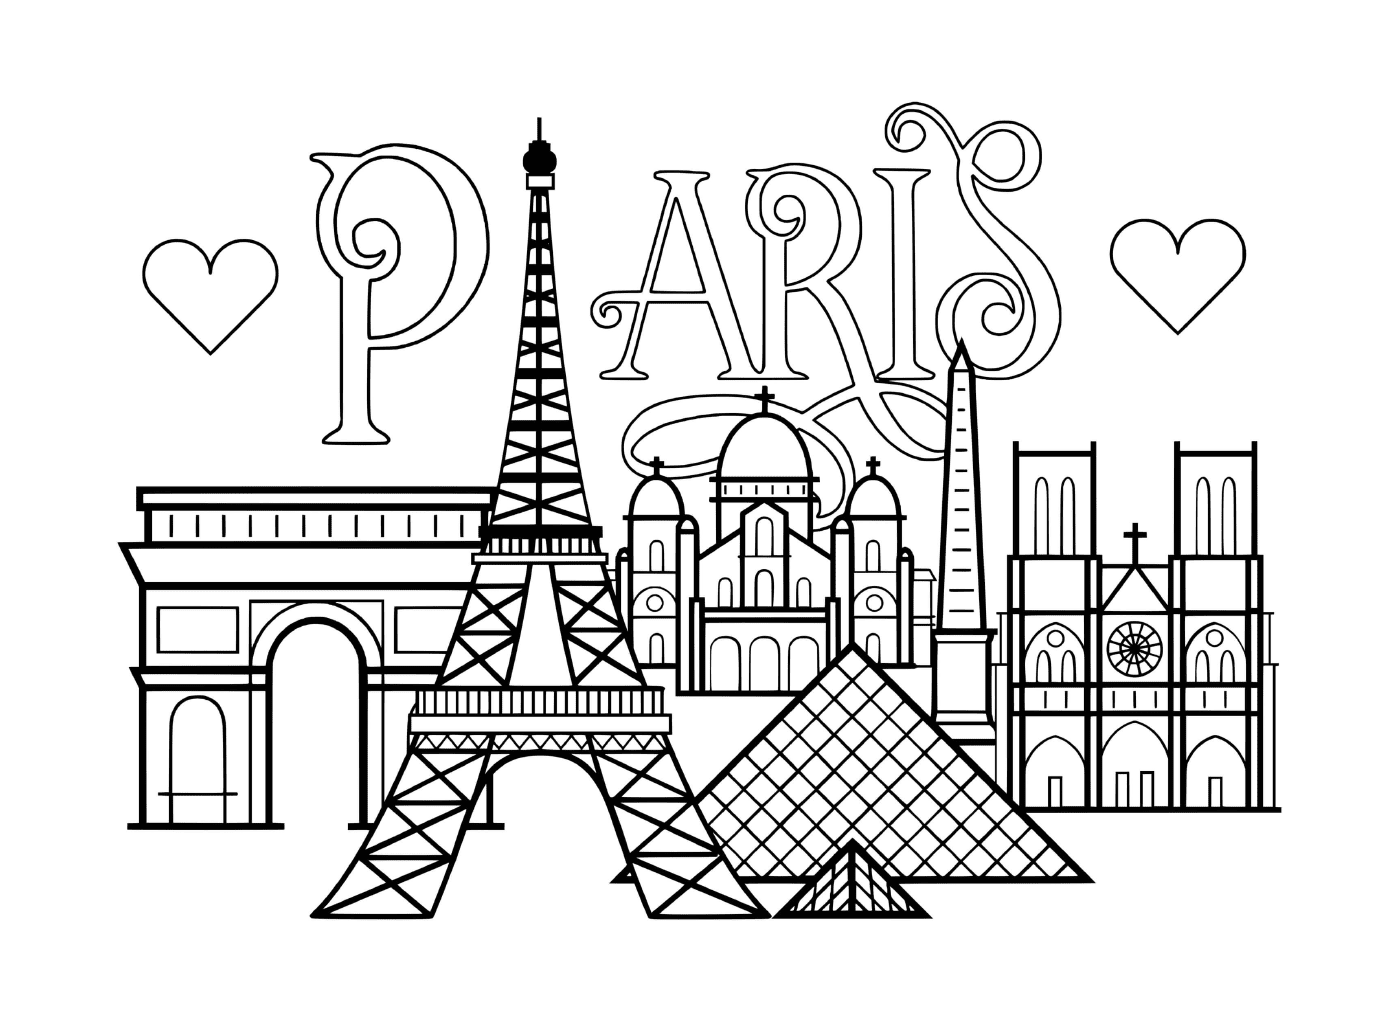   Ville de Paris, monuments célèbres 